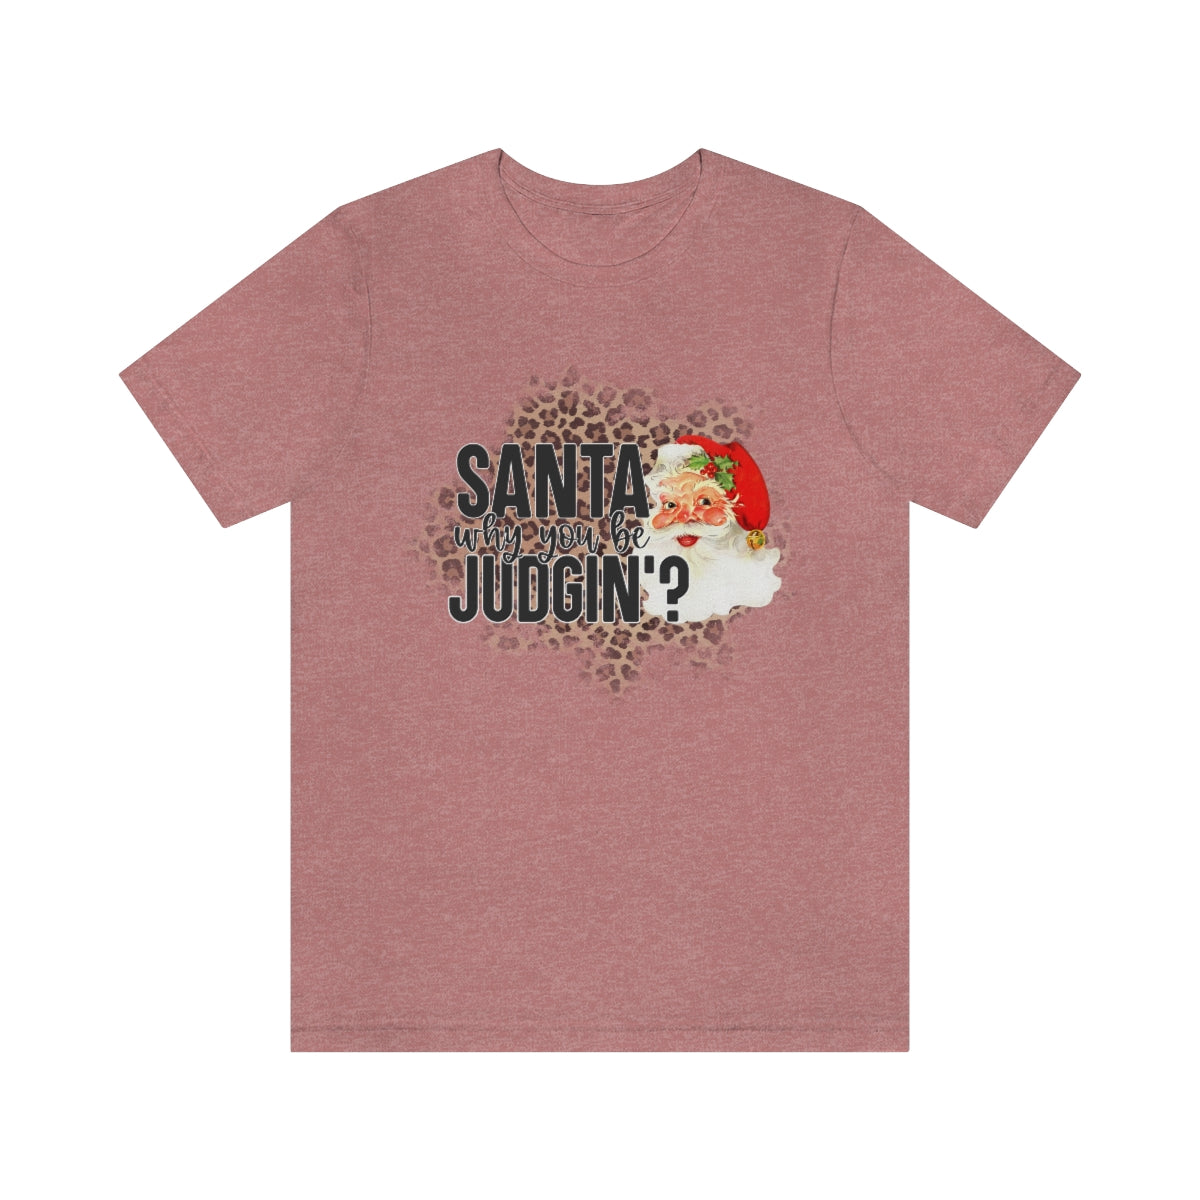 Santa Why You Be Judgin? Shirt